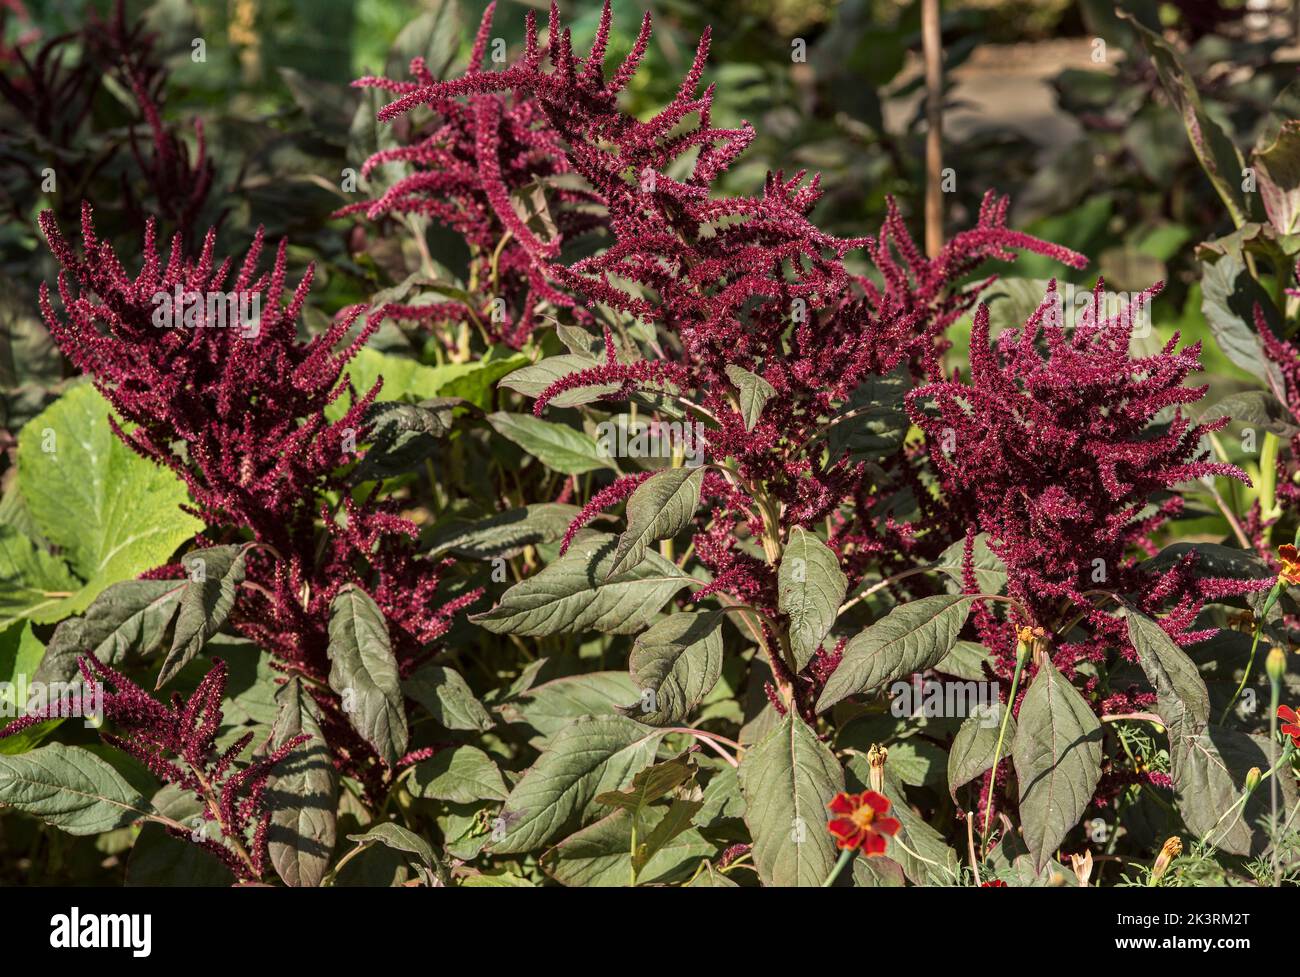 Amaranth rosso o Amaranthus, storicamente usato come colorante naturale per tessuto / stoffa / materiali. Foto Stock